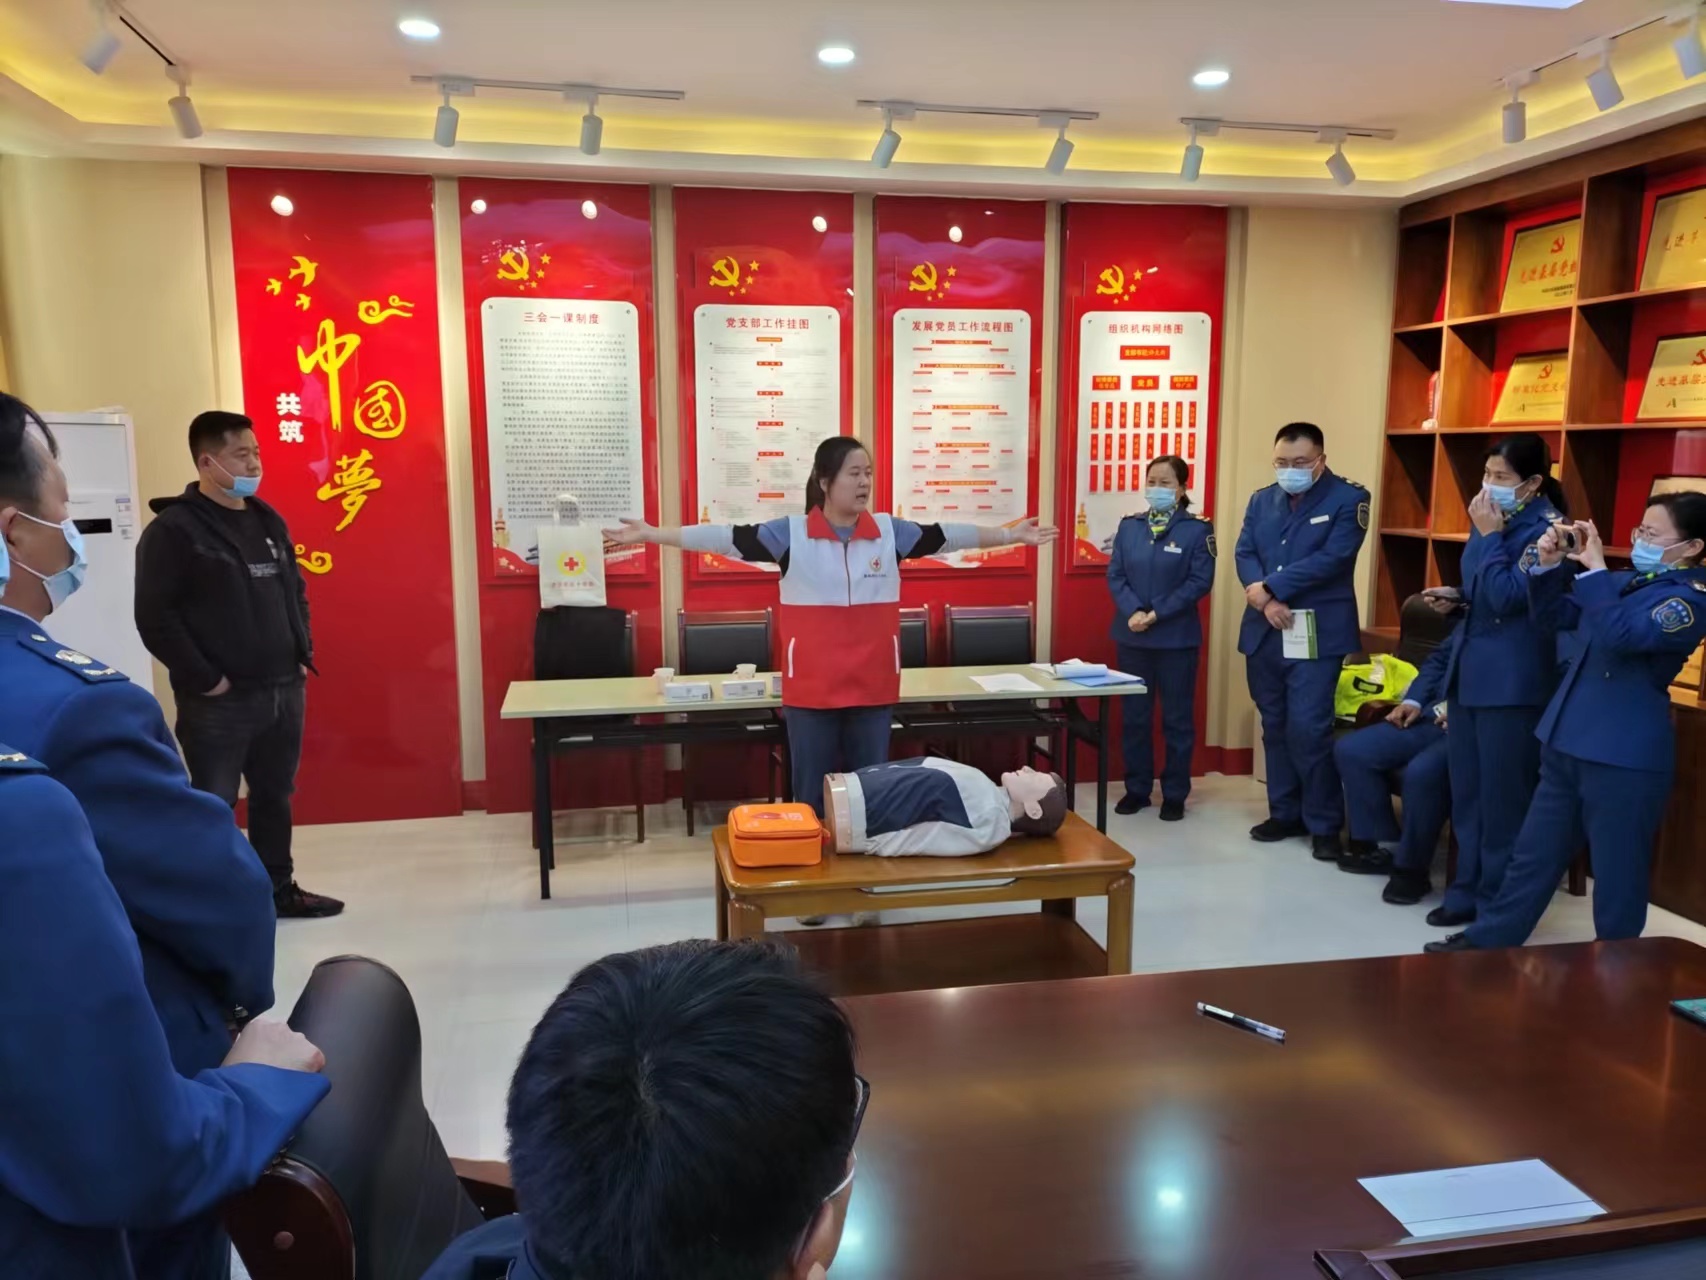 曲阜市红十字会举办高速集团公司应急救护培训班